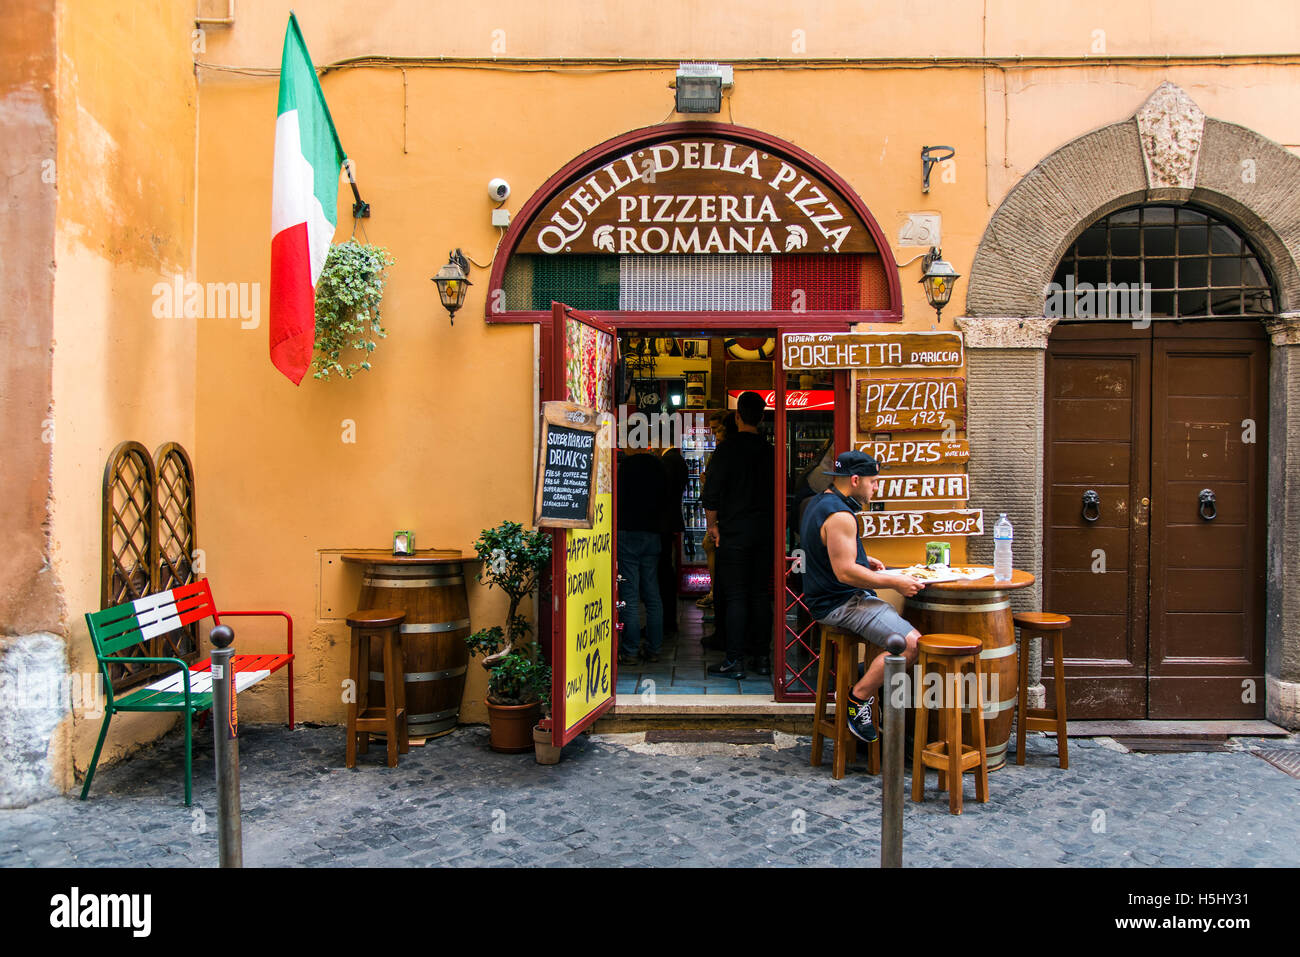 Ristorante Pizzeria con bandiera italiana, Roma, lazio, Italy Foto Stock